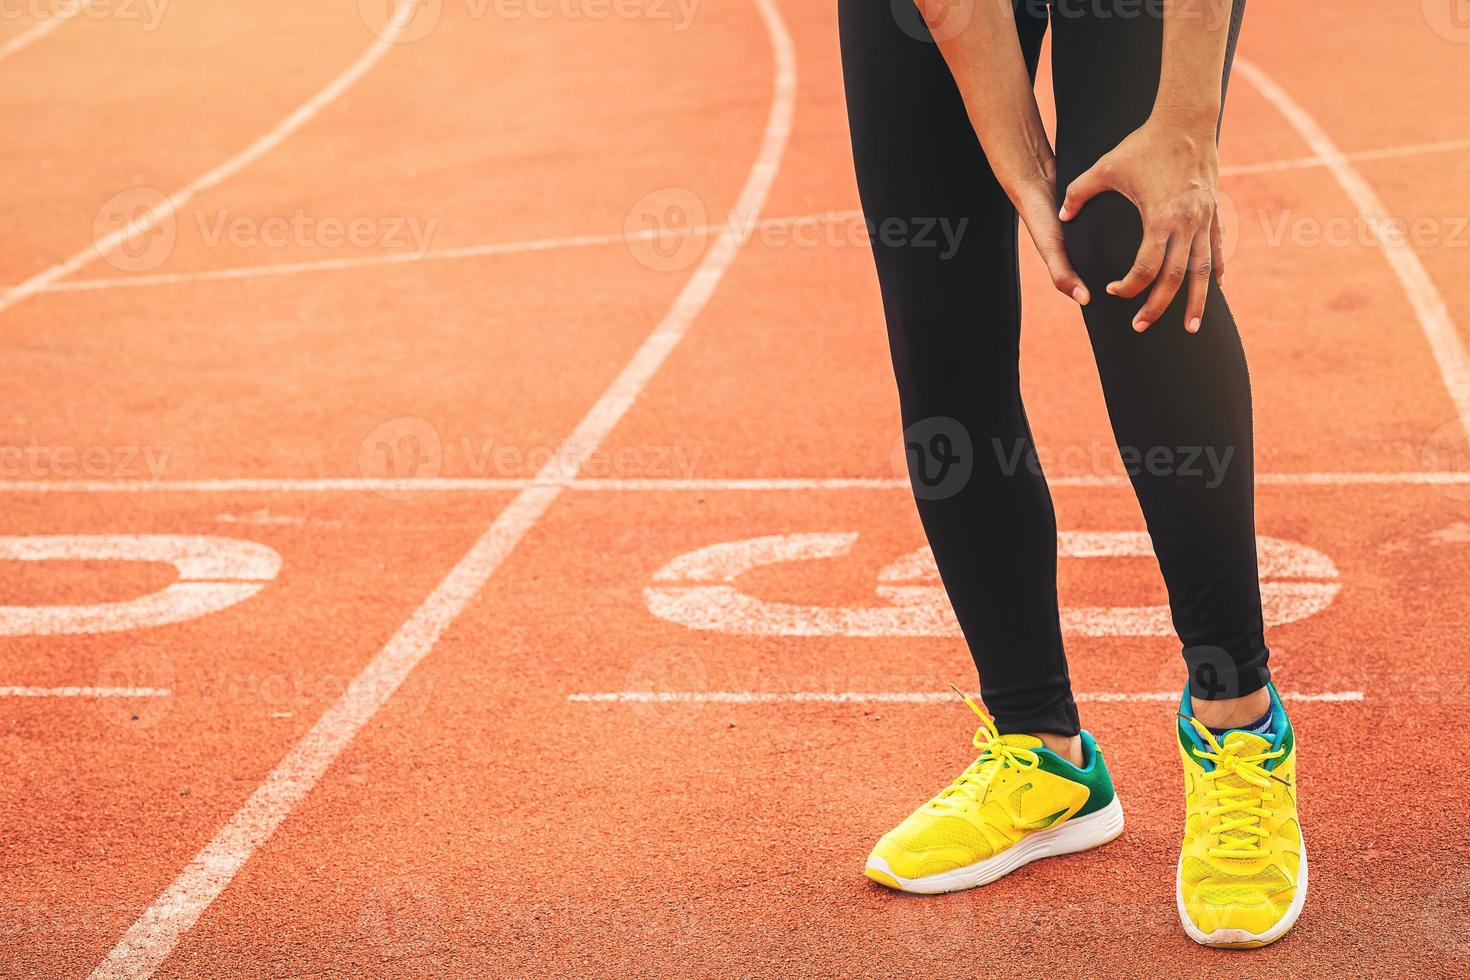 löpare kvinna med sport kör knäskada på racerbanan. händer som håller knä med smärtsam vrist knä vridning. foto